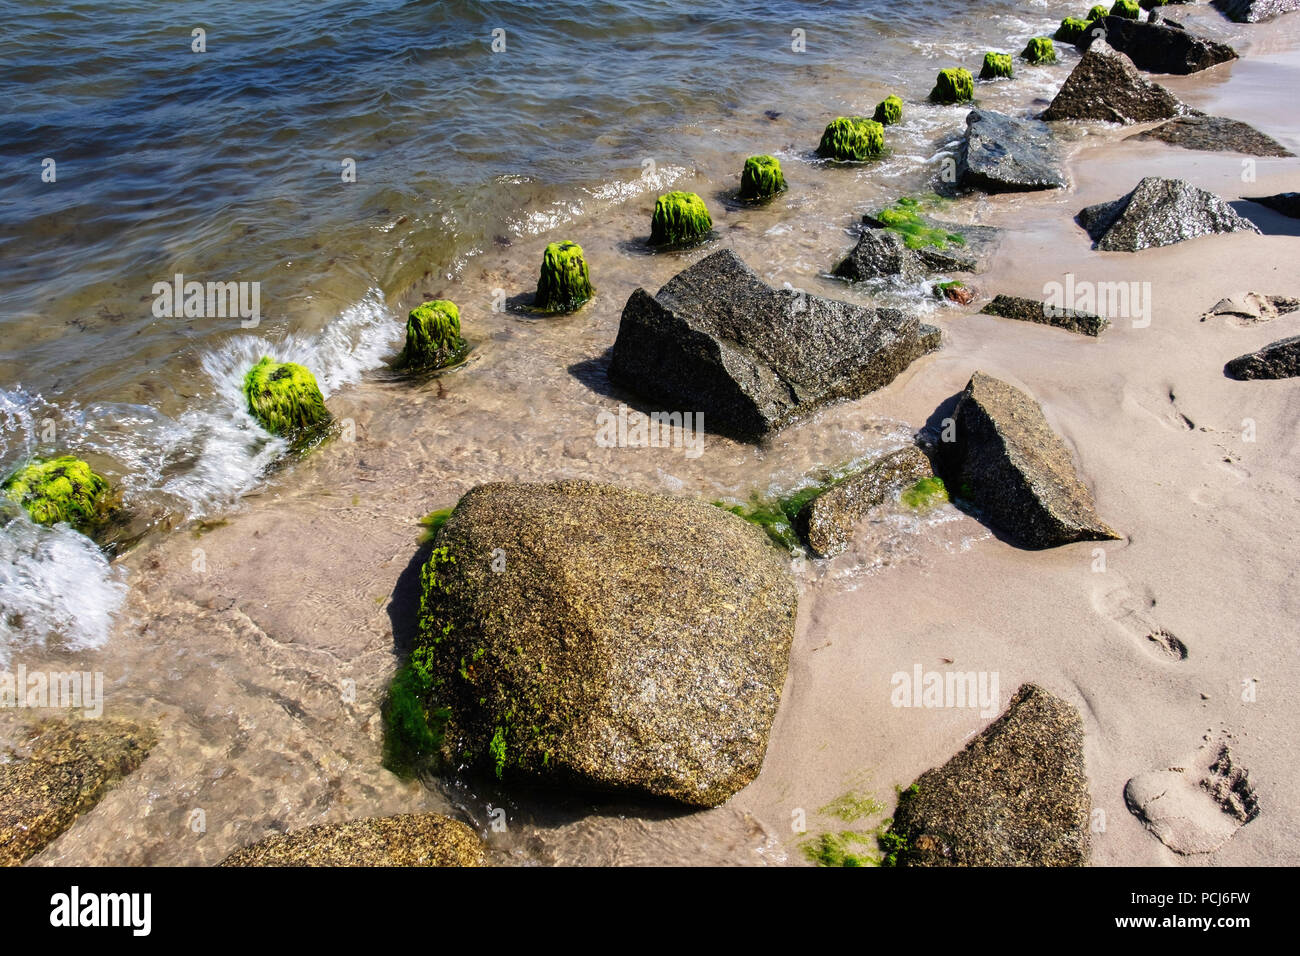 Germania Loddin,Stubbenfelde spiaggia.di balneazione costiere resort sull'isola di Usedom sul Mar Baltico. Rocks & legno groyne prevenire erosione della spiaggia sabbiosa Foto Stock